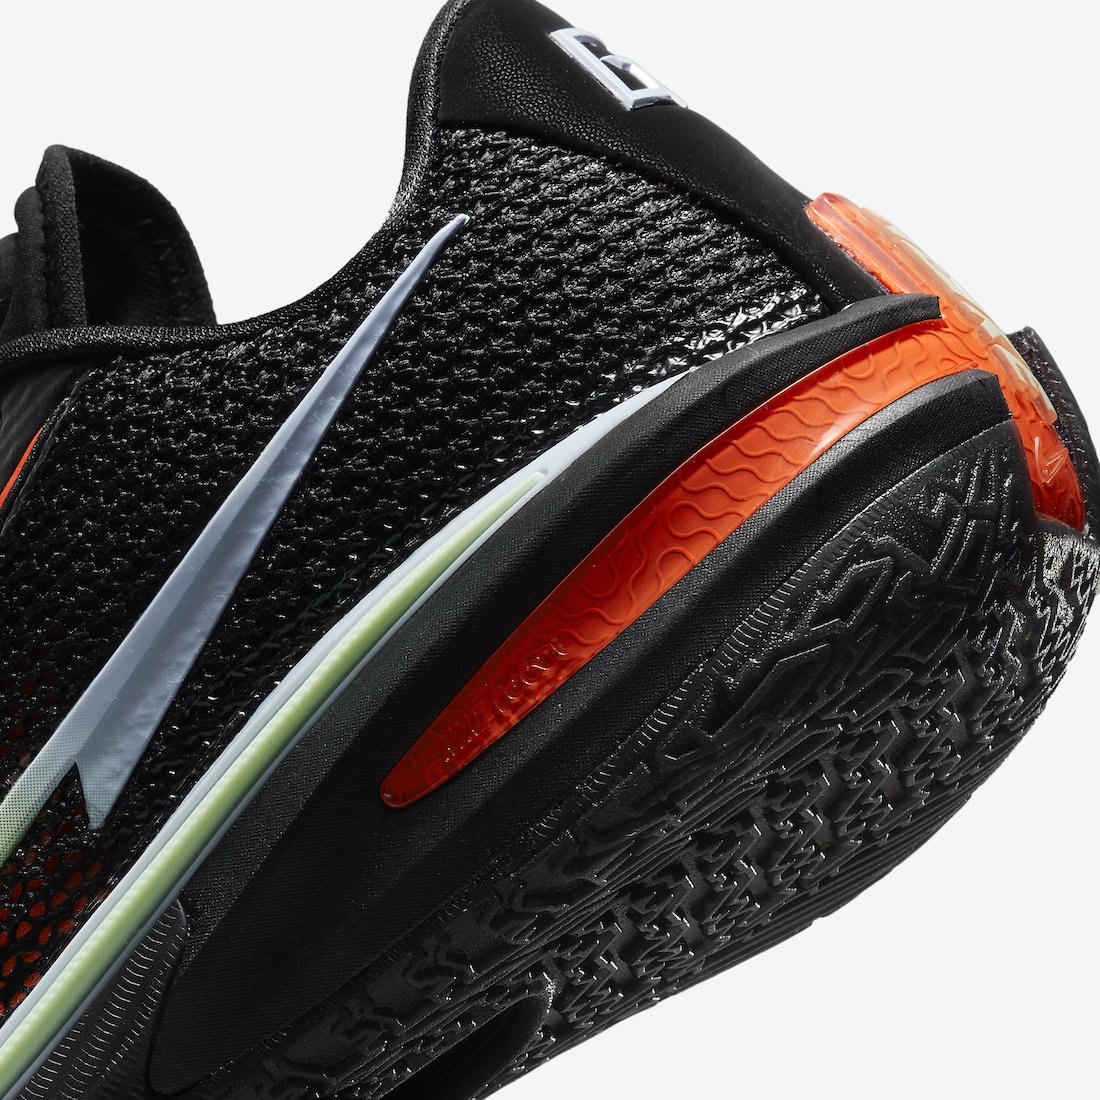 Nike 最新鞋款系列「Worldwide Pack」正式登場 | Hypebeast